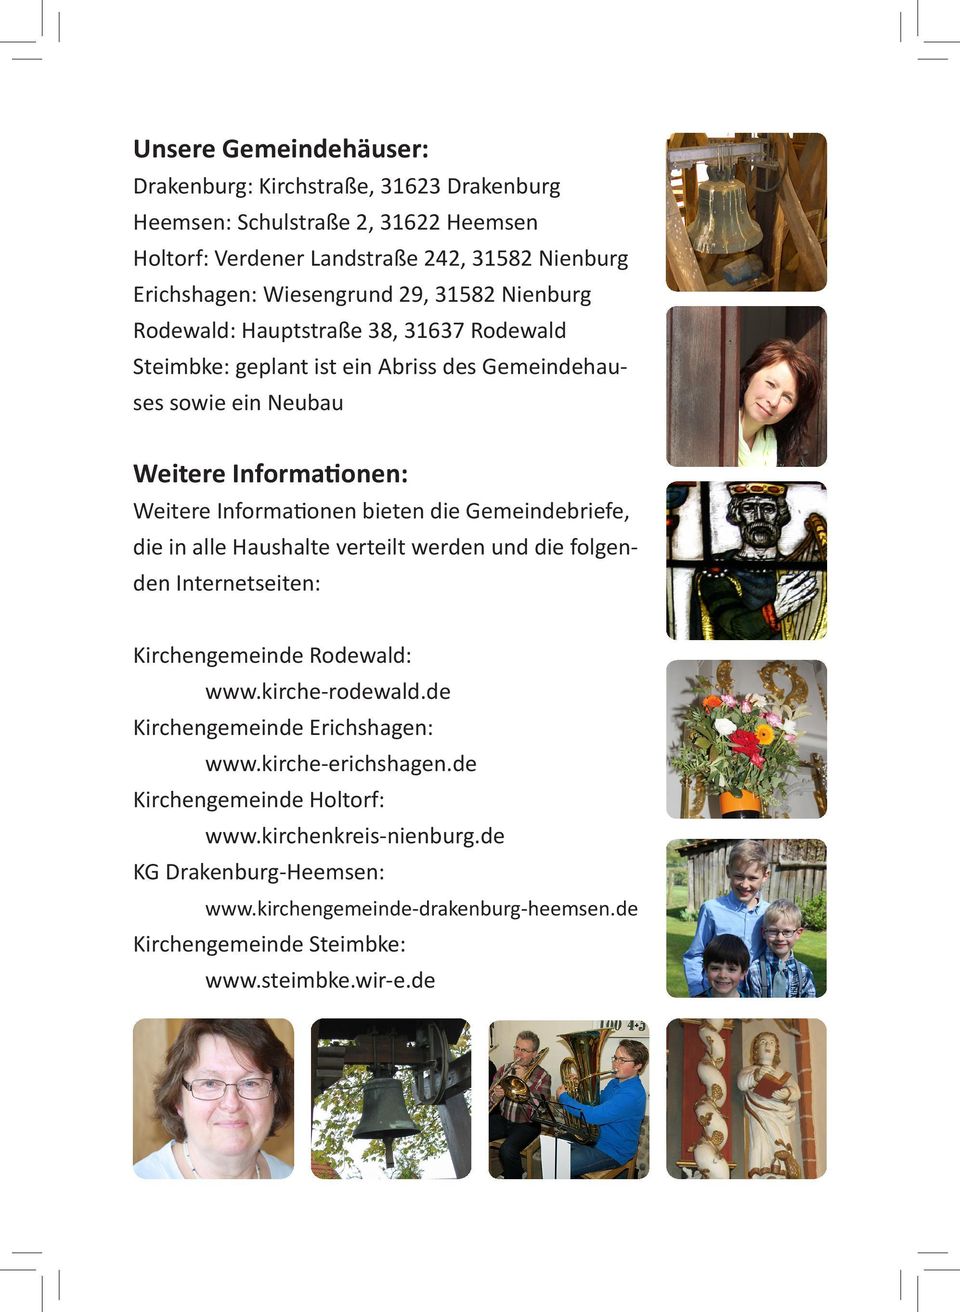 bieten die Gemeindebriefe, die in alle Haushalte verteilt werden und die folgenden Internetseiten: Kirchengemeinde Rodewald: www.kirche-rodewald.